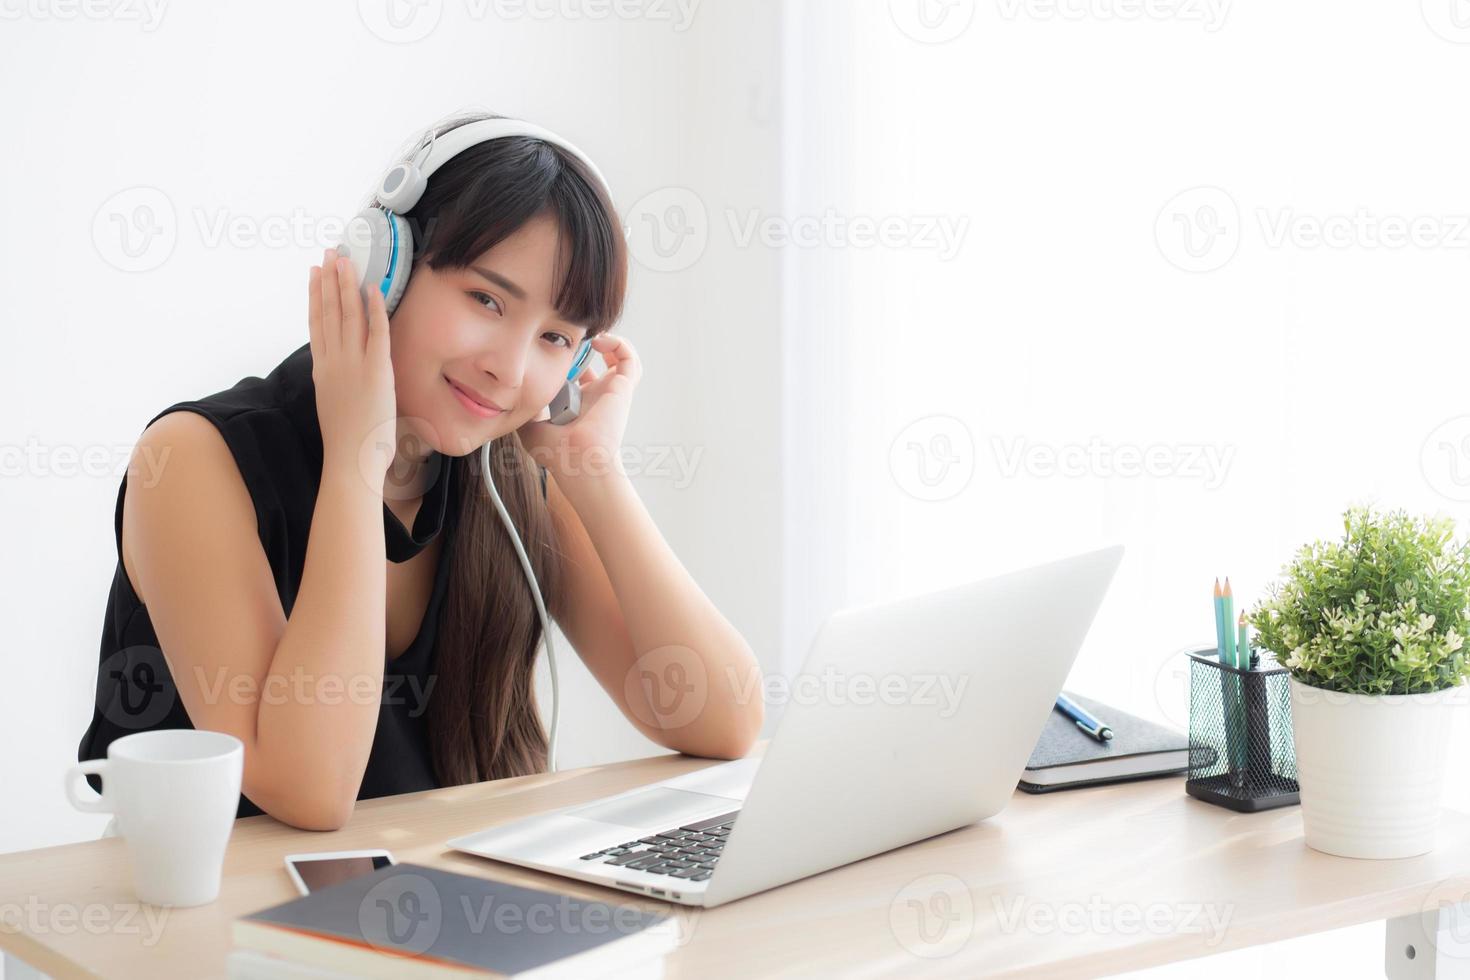 bela jovem asiática usar fone de ouvido sorrindo dizer olá usando chamada de vídeo de bate-papo no computador portátil, garota relaxe gosta de ouvir música online, educação, aprendizagem, comunicação e conceito de estilo de vida. foto